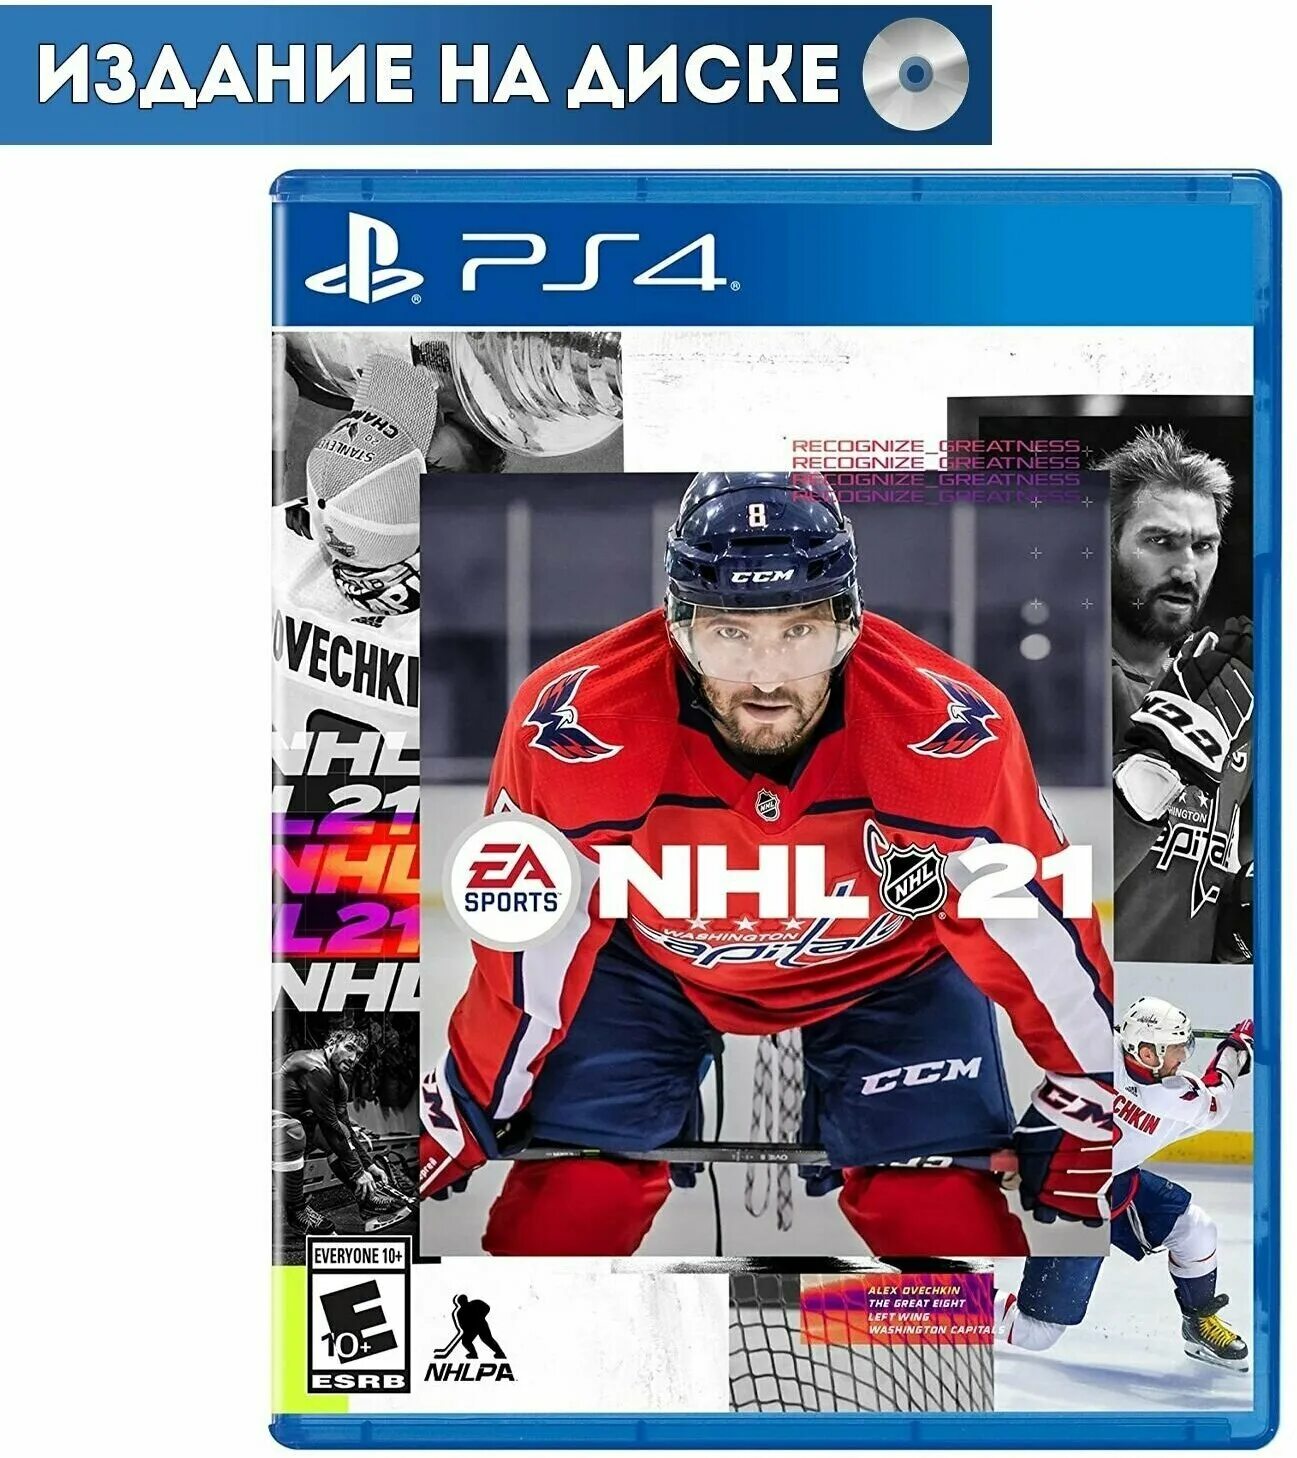 Nhl xbox series. NHL 21 ps4. Диск ПС 4 NHL 21. NHL 21 ps4 диск. NHL 21 обложка.